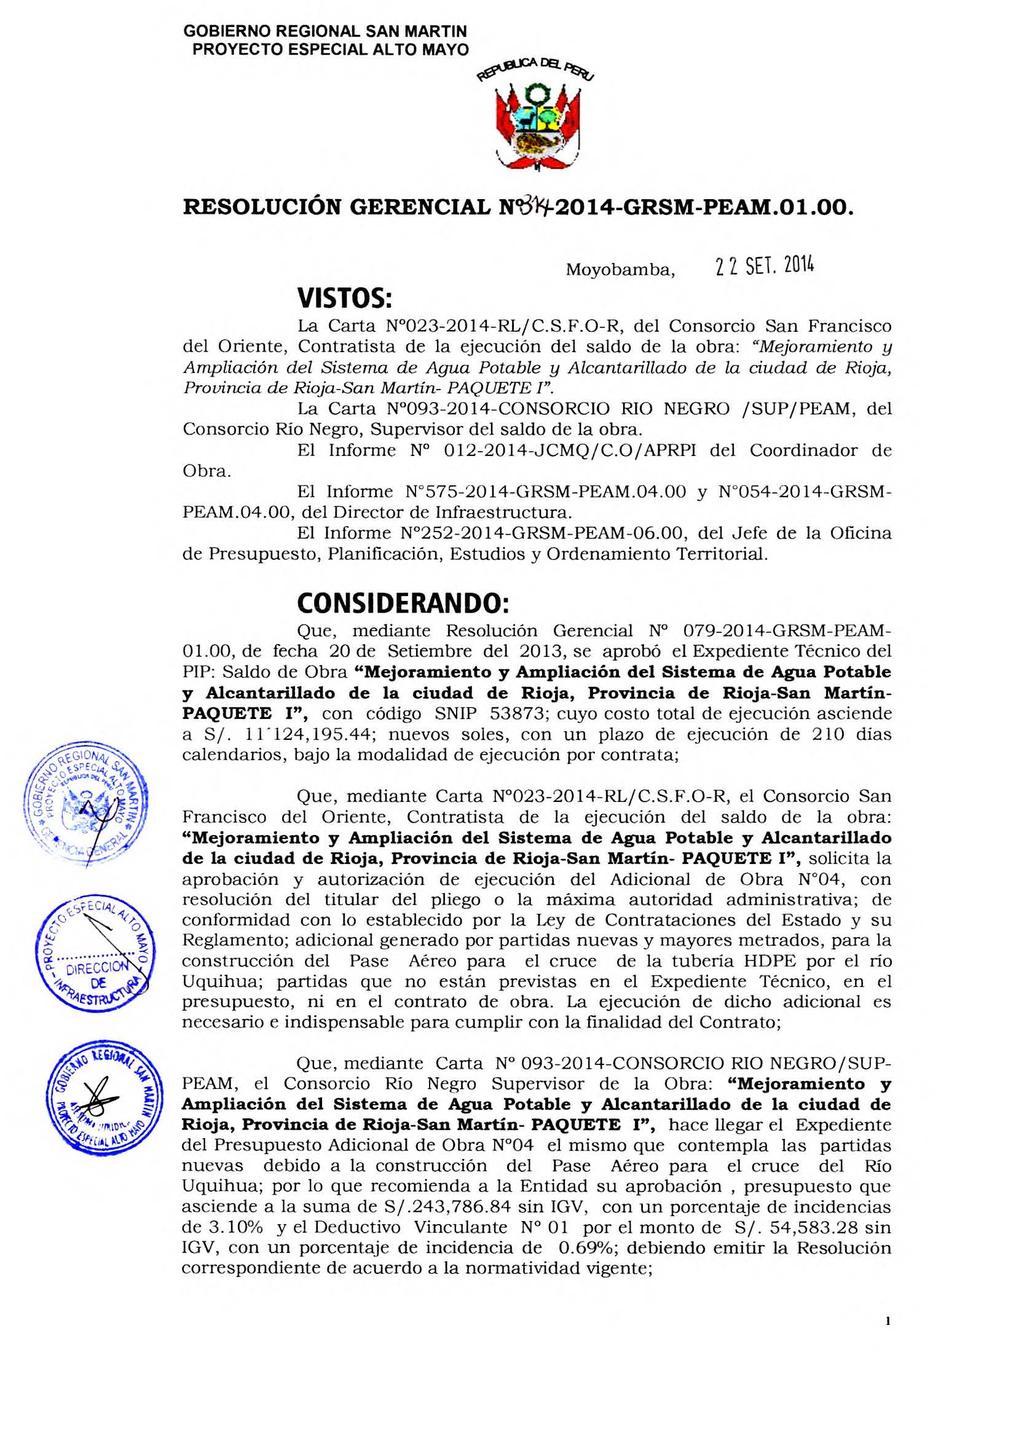 RESOLUCIÓN GERENCIAL Ncb19-2014-GRSM-PEAM.01.00. Moyobamba, 22 SET. 2014 VISTOS: La Carta N 023-2014-RL/C.S.F.